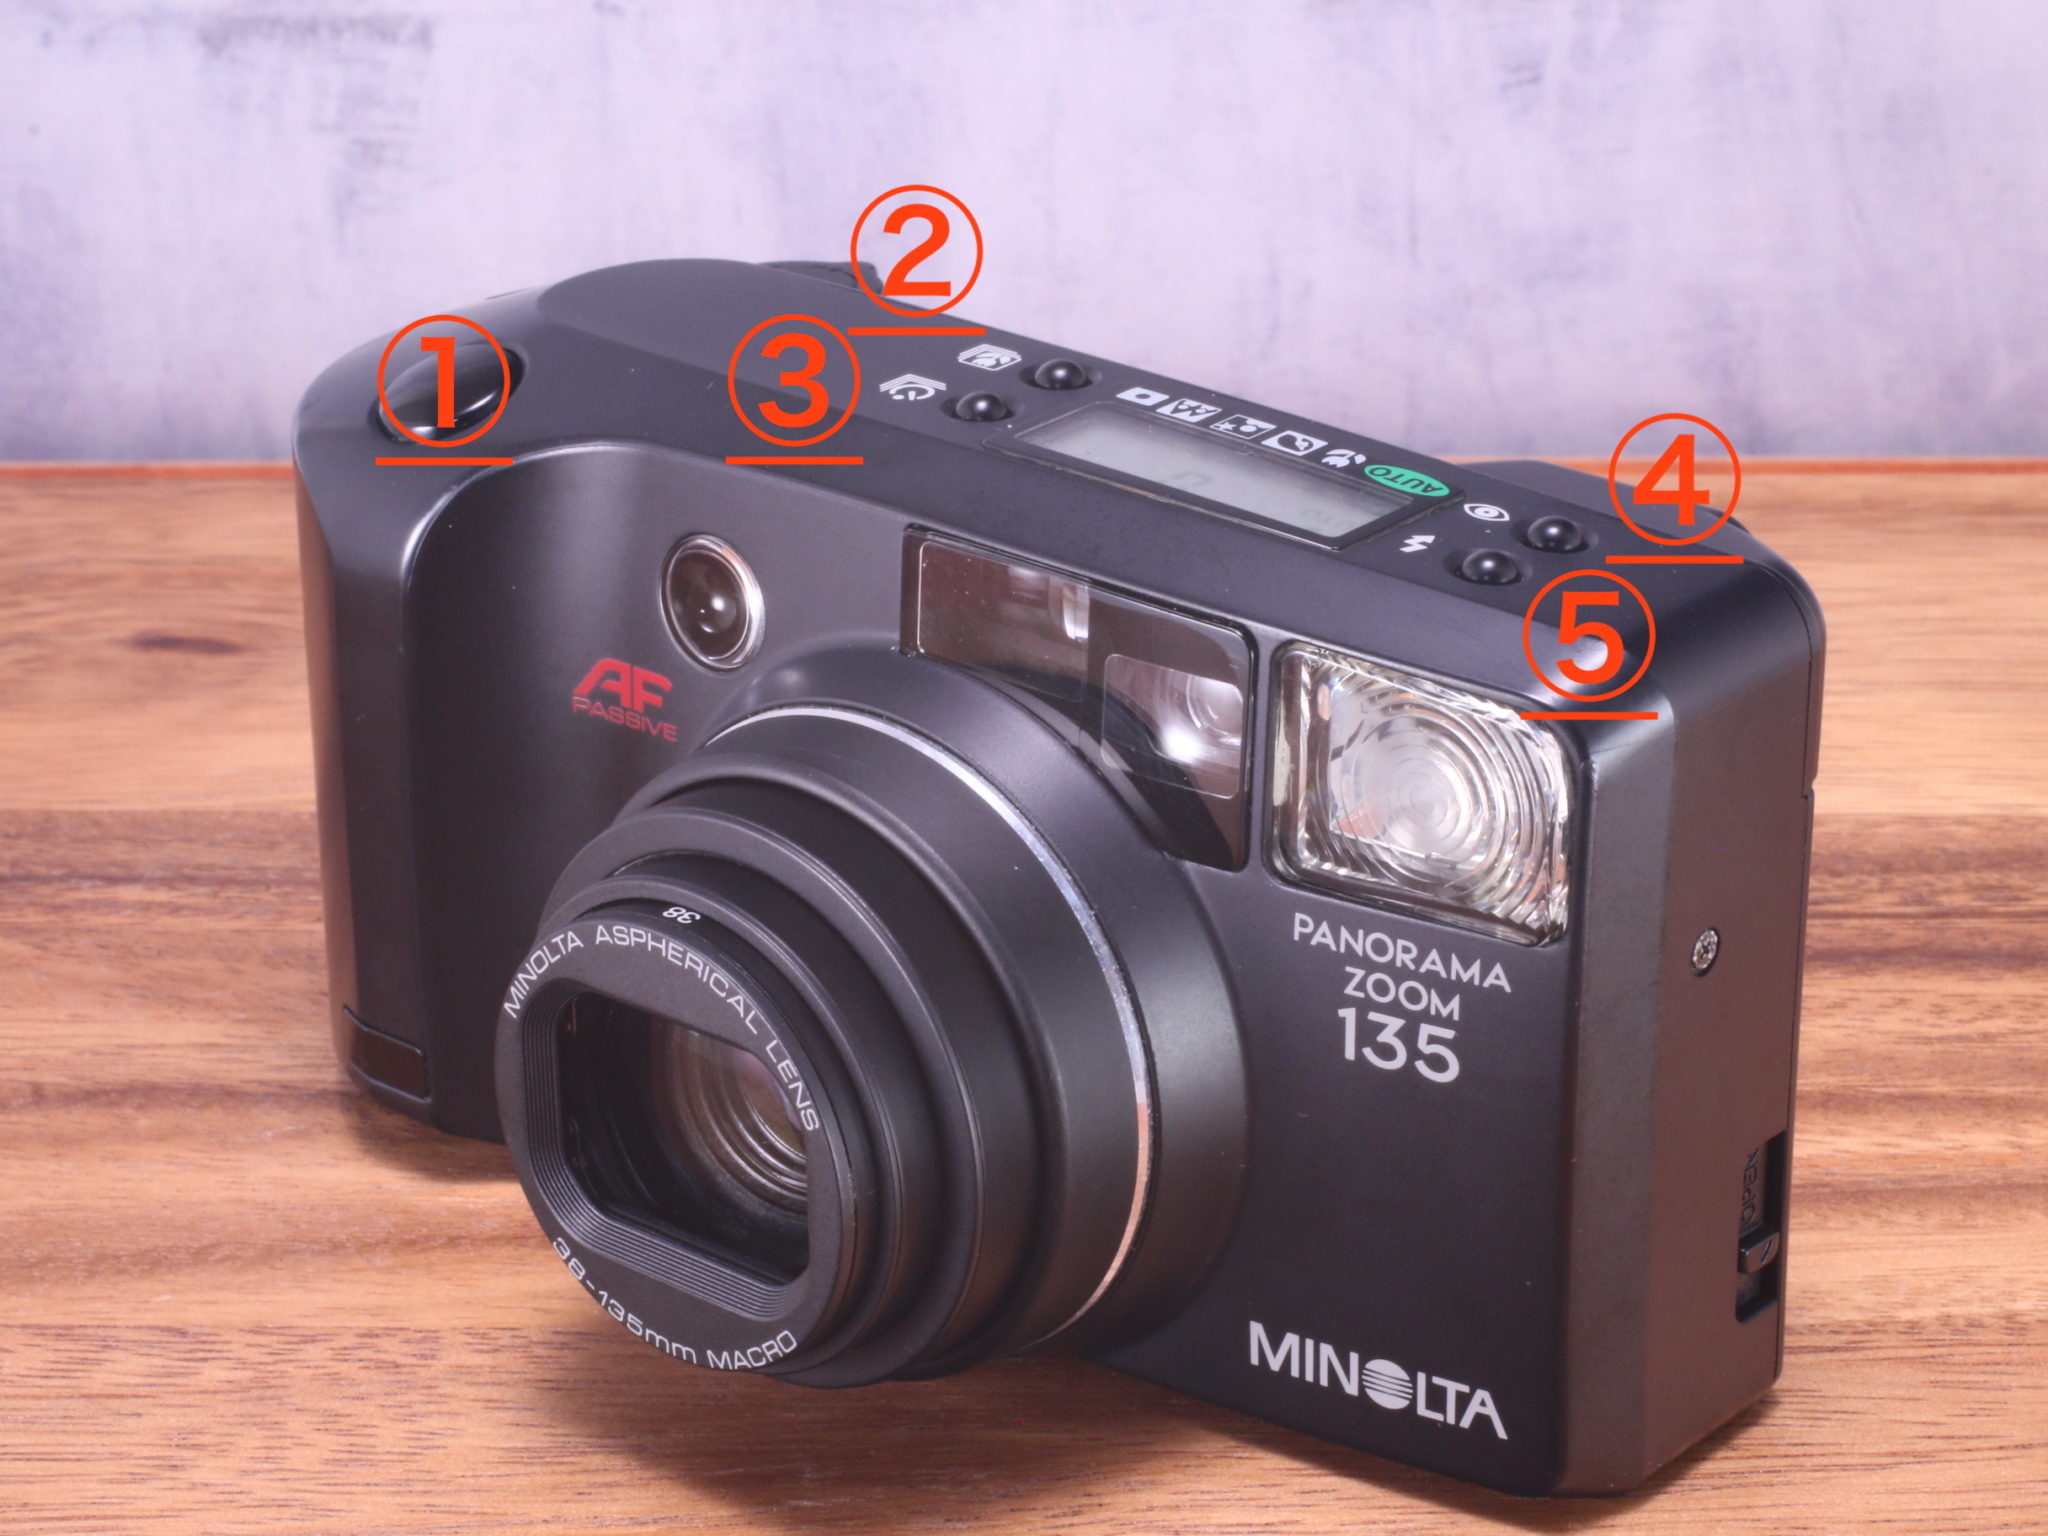 Minolta panorama zoom 105 フィルムカメラ - カメラ